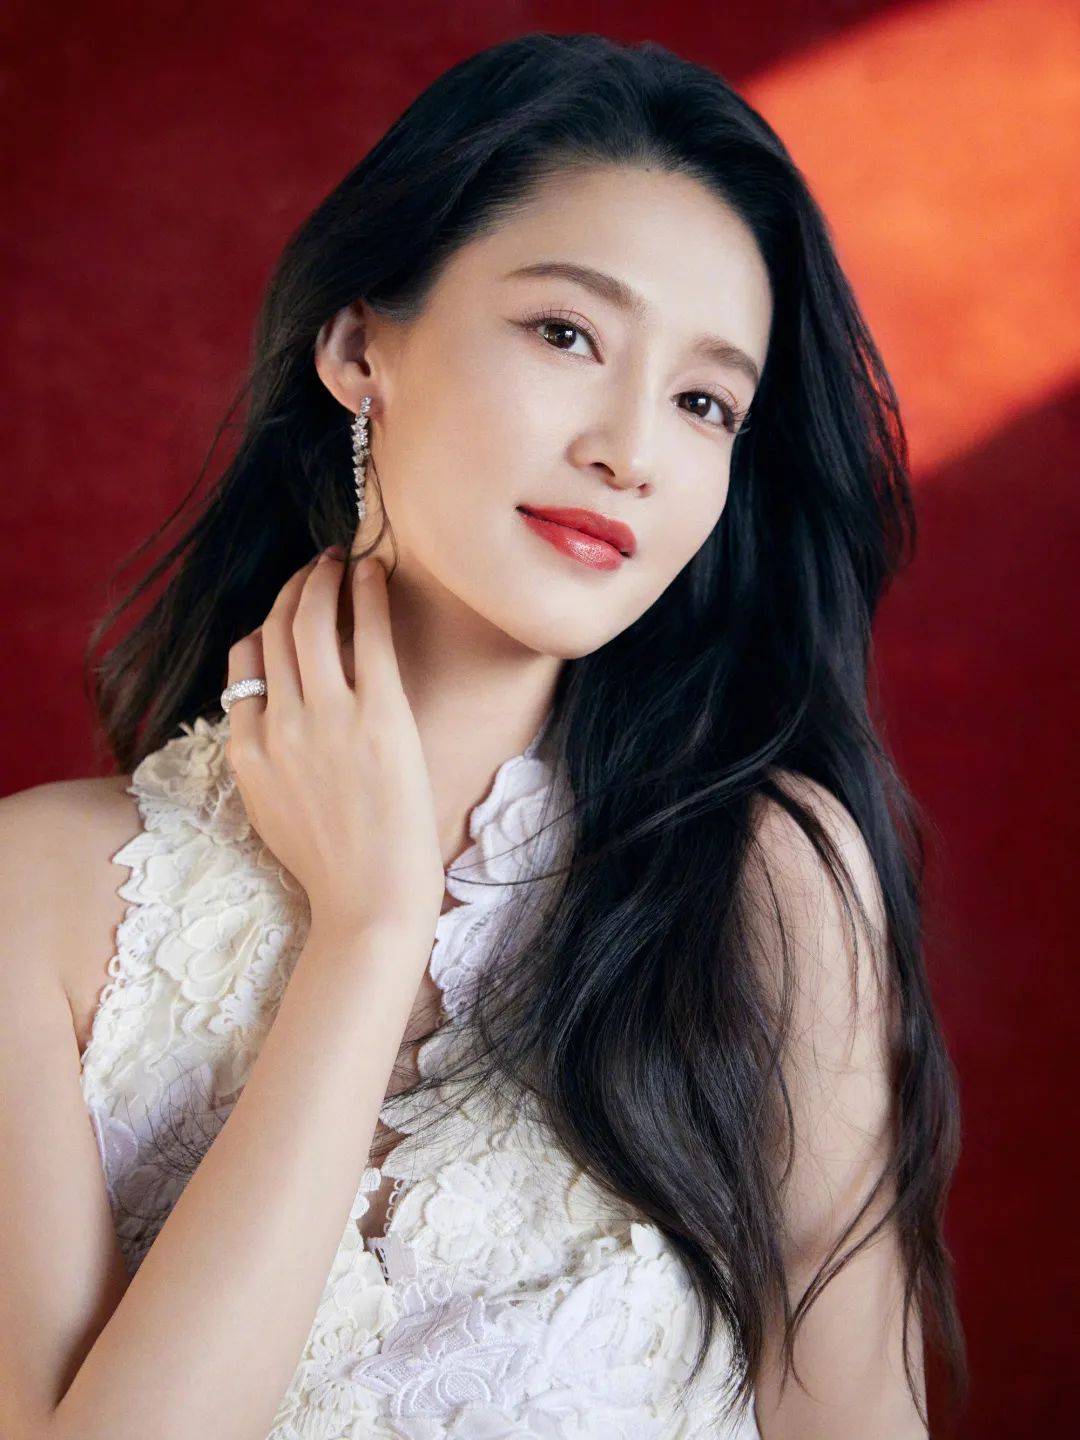 李沁,1990年9月27日出生于江苏省苏州市昆山市,女演员,毕业于上海戏剧